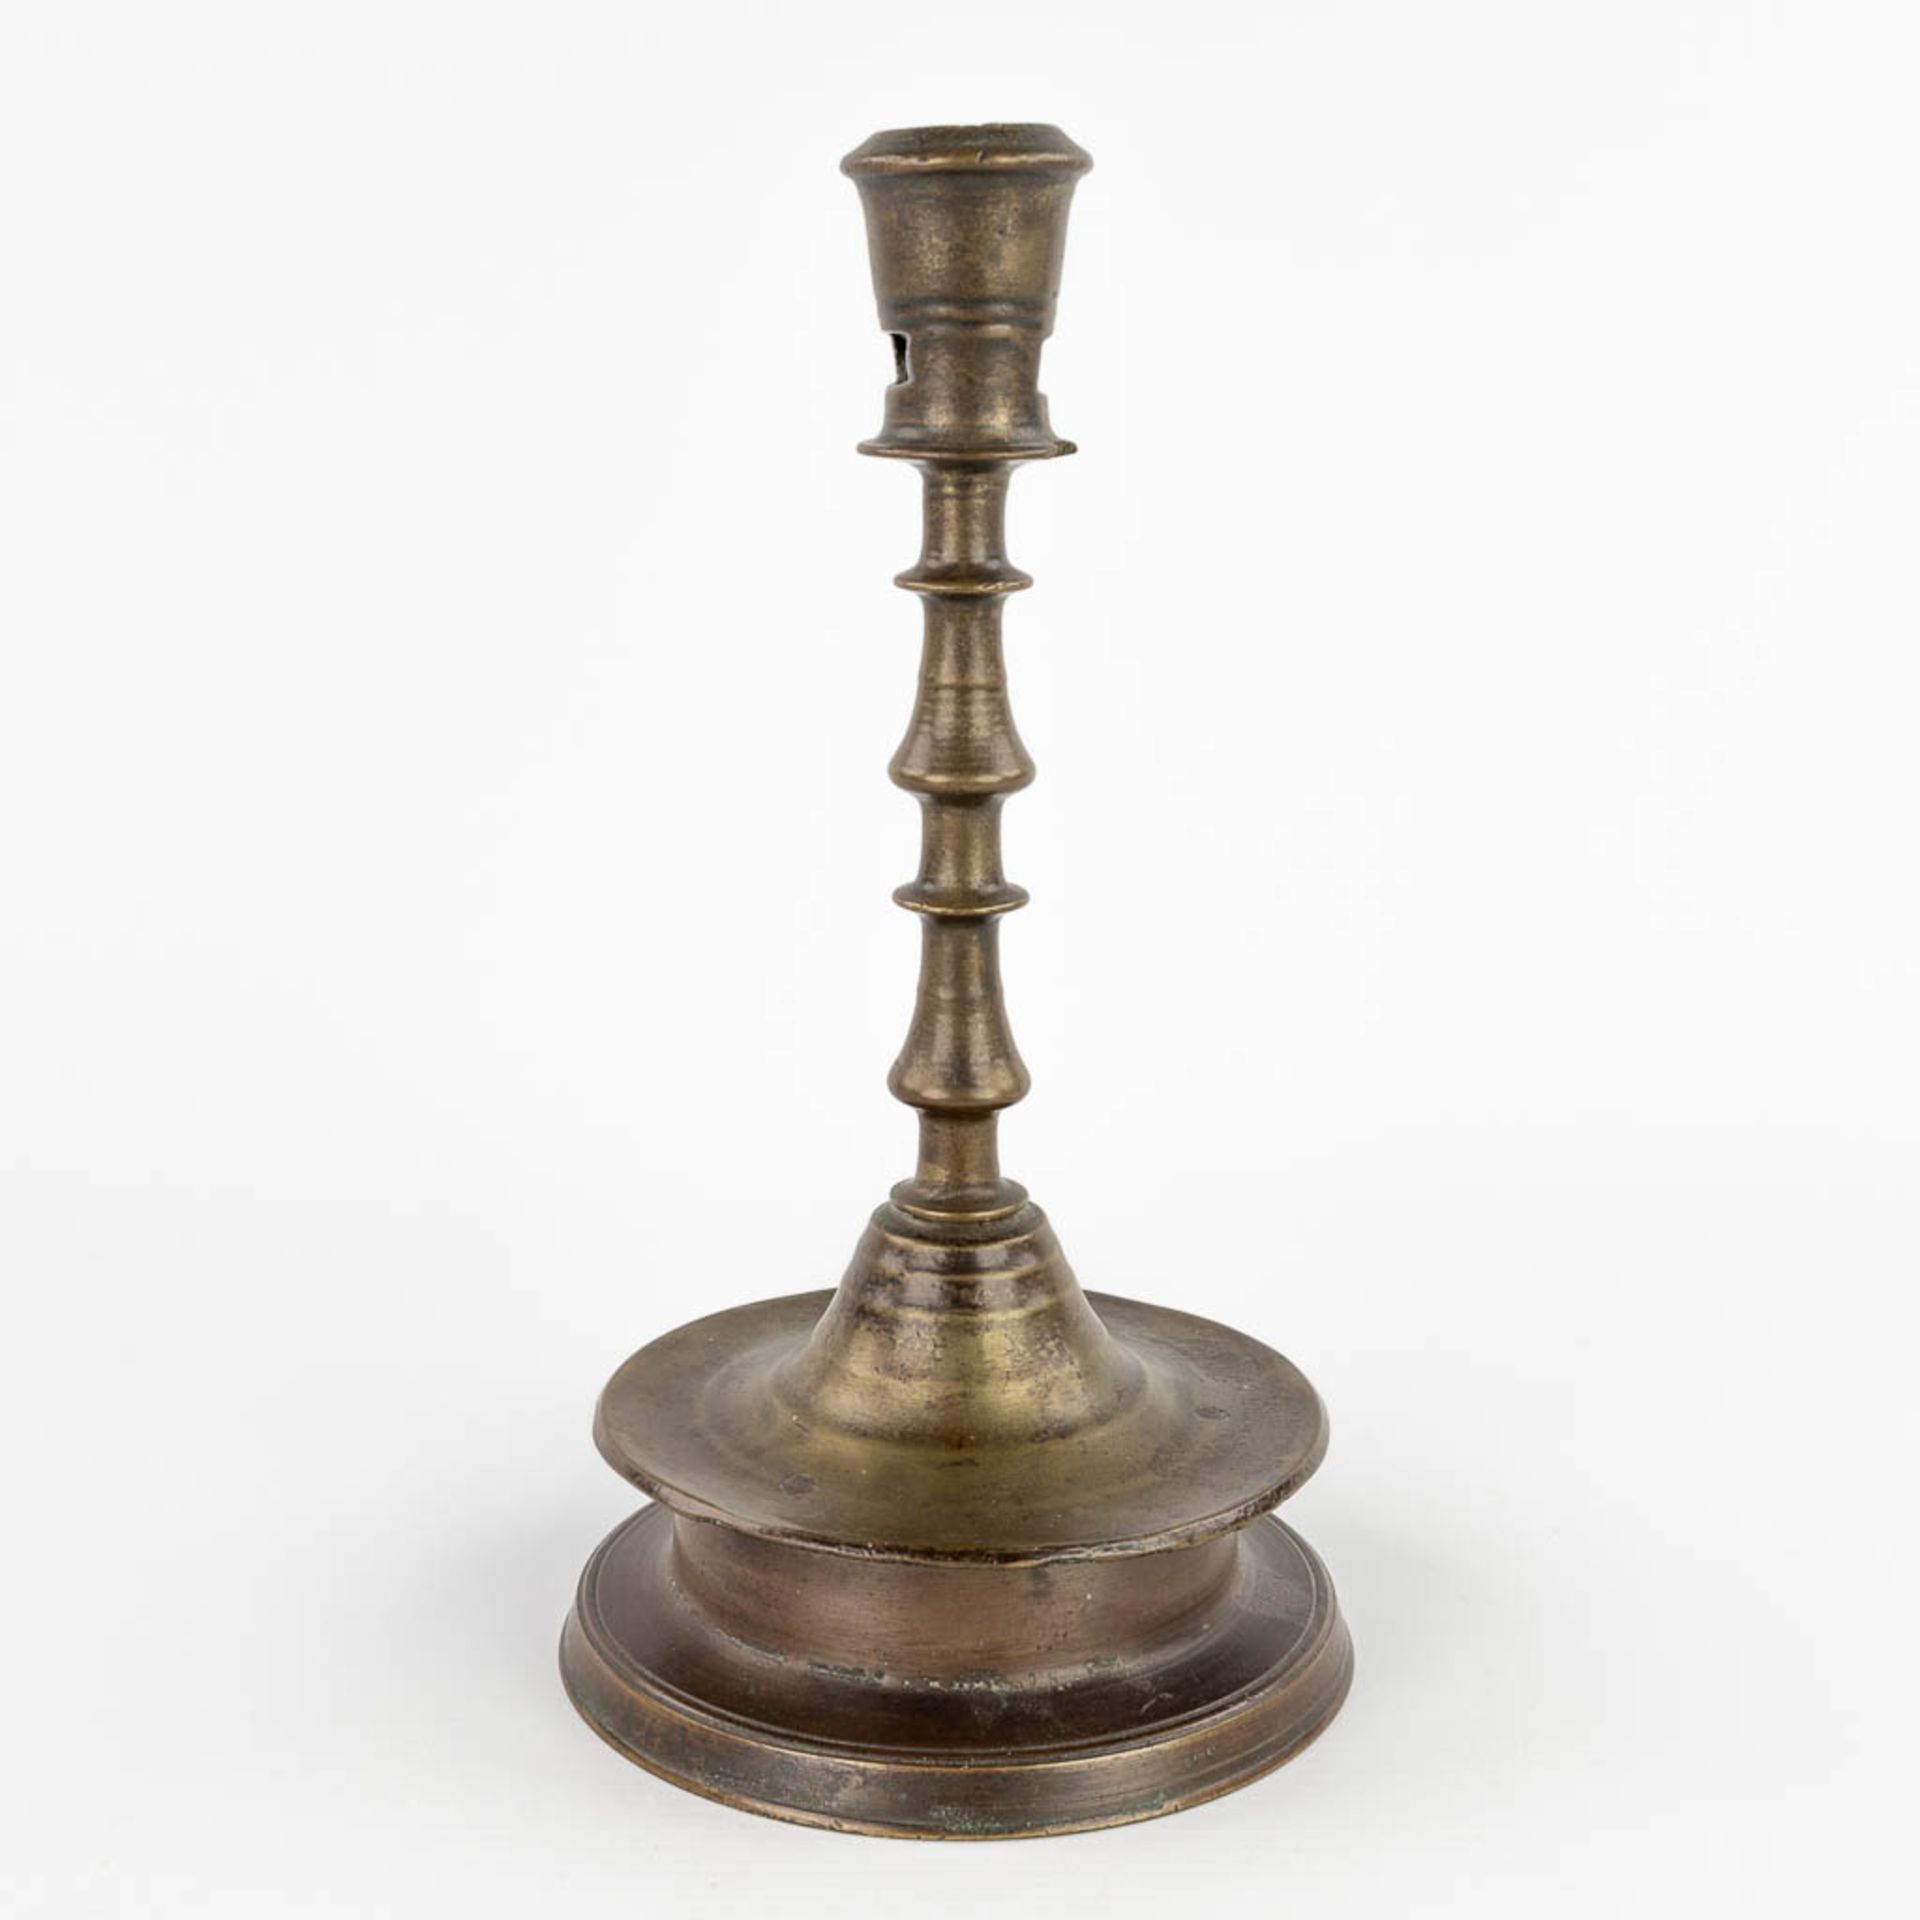 An antique Flemish or Dutch Button candlestick, bronze, 17th C (H:25 x D:13,3 cm) - Image 4 of 9